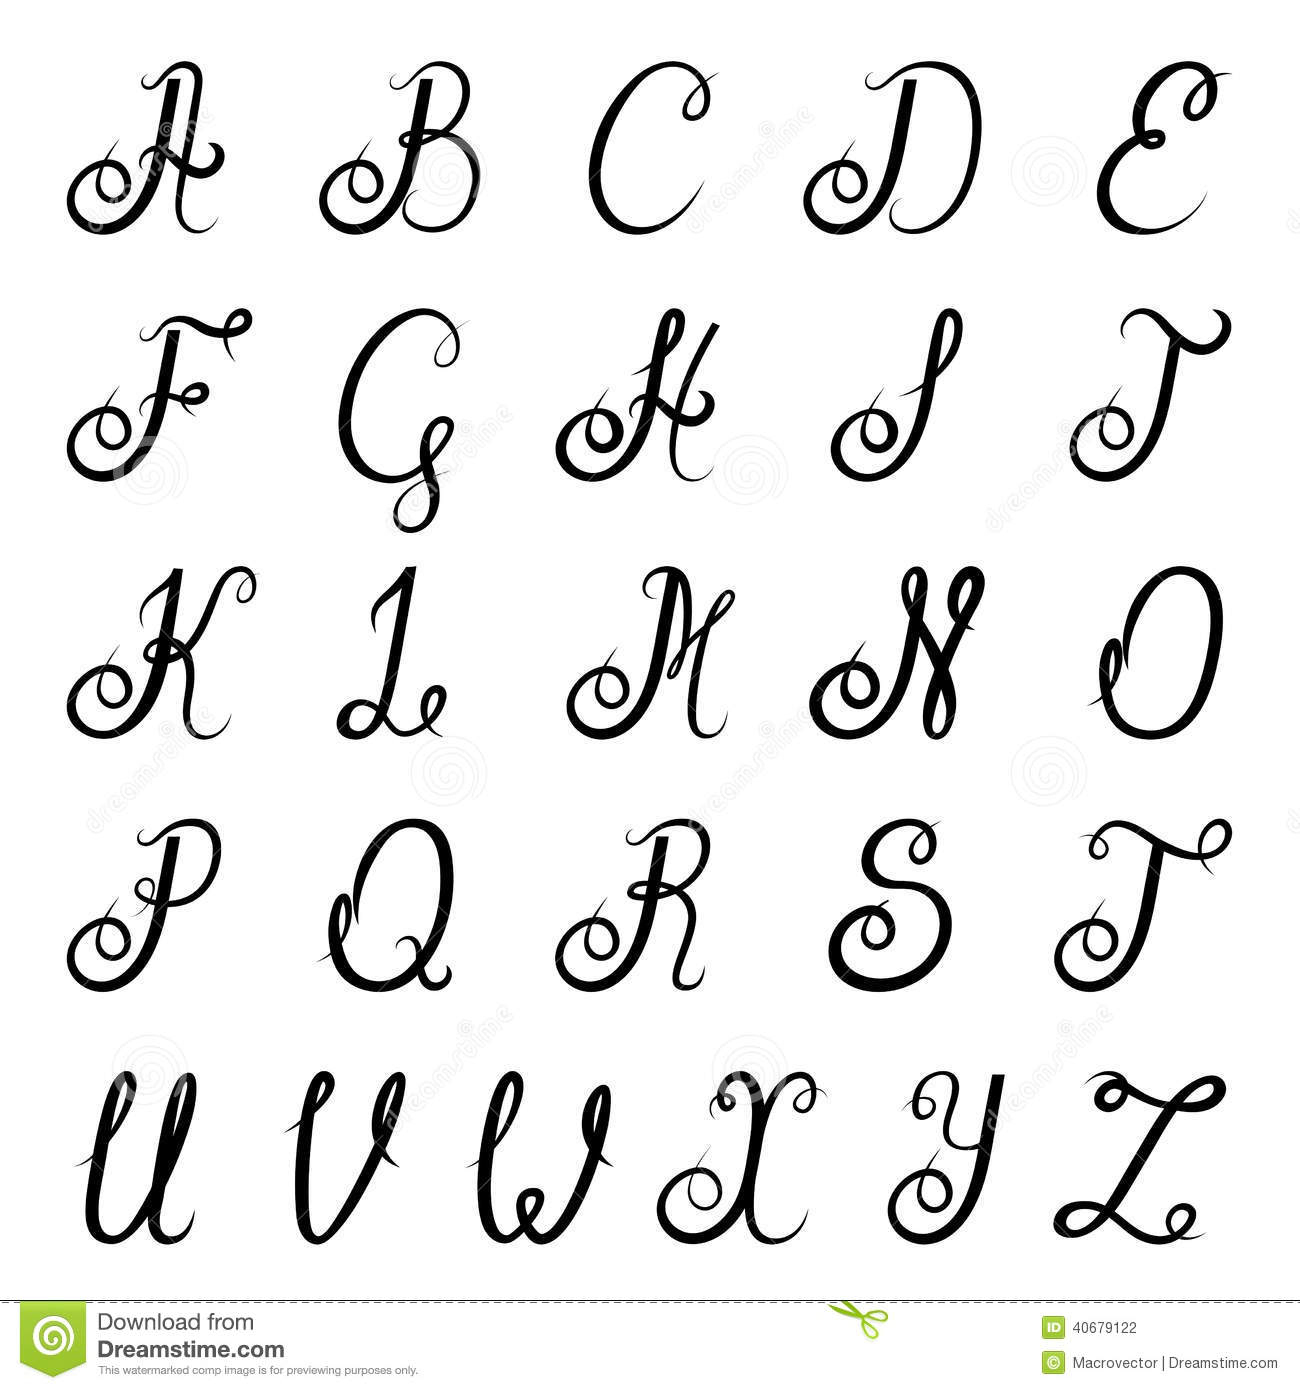 Noir D&amp;#039;alphabet De Calligraphie Illustration De Vecteur concernant Modele Calligraphie Alphabet Gratuit 